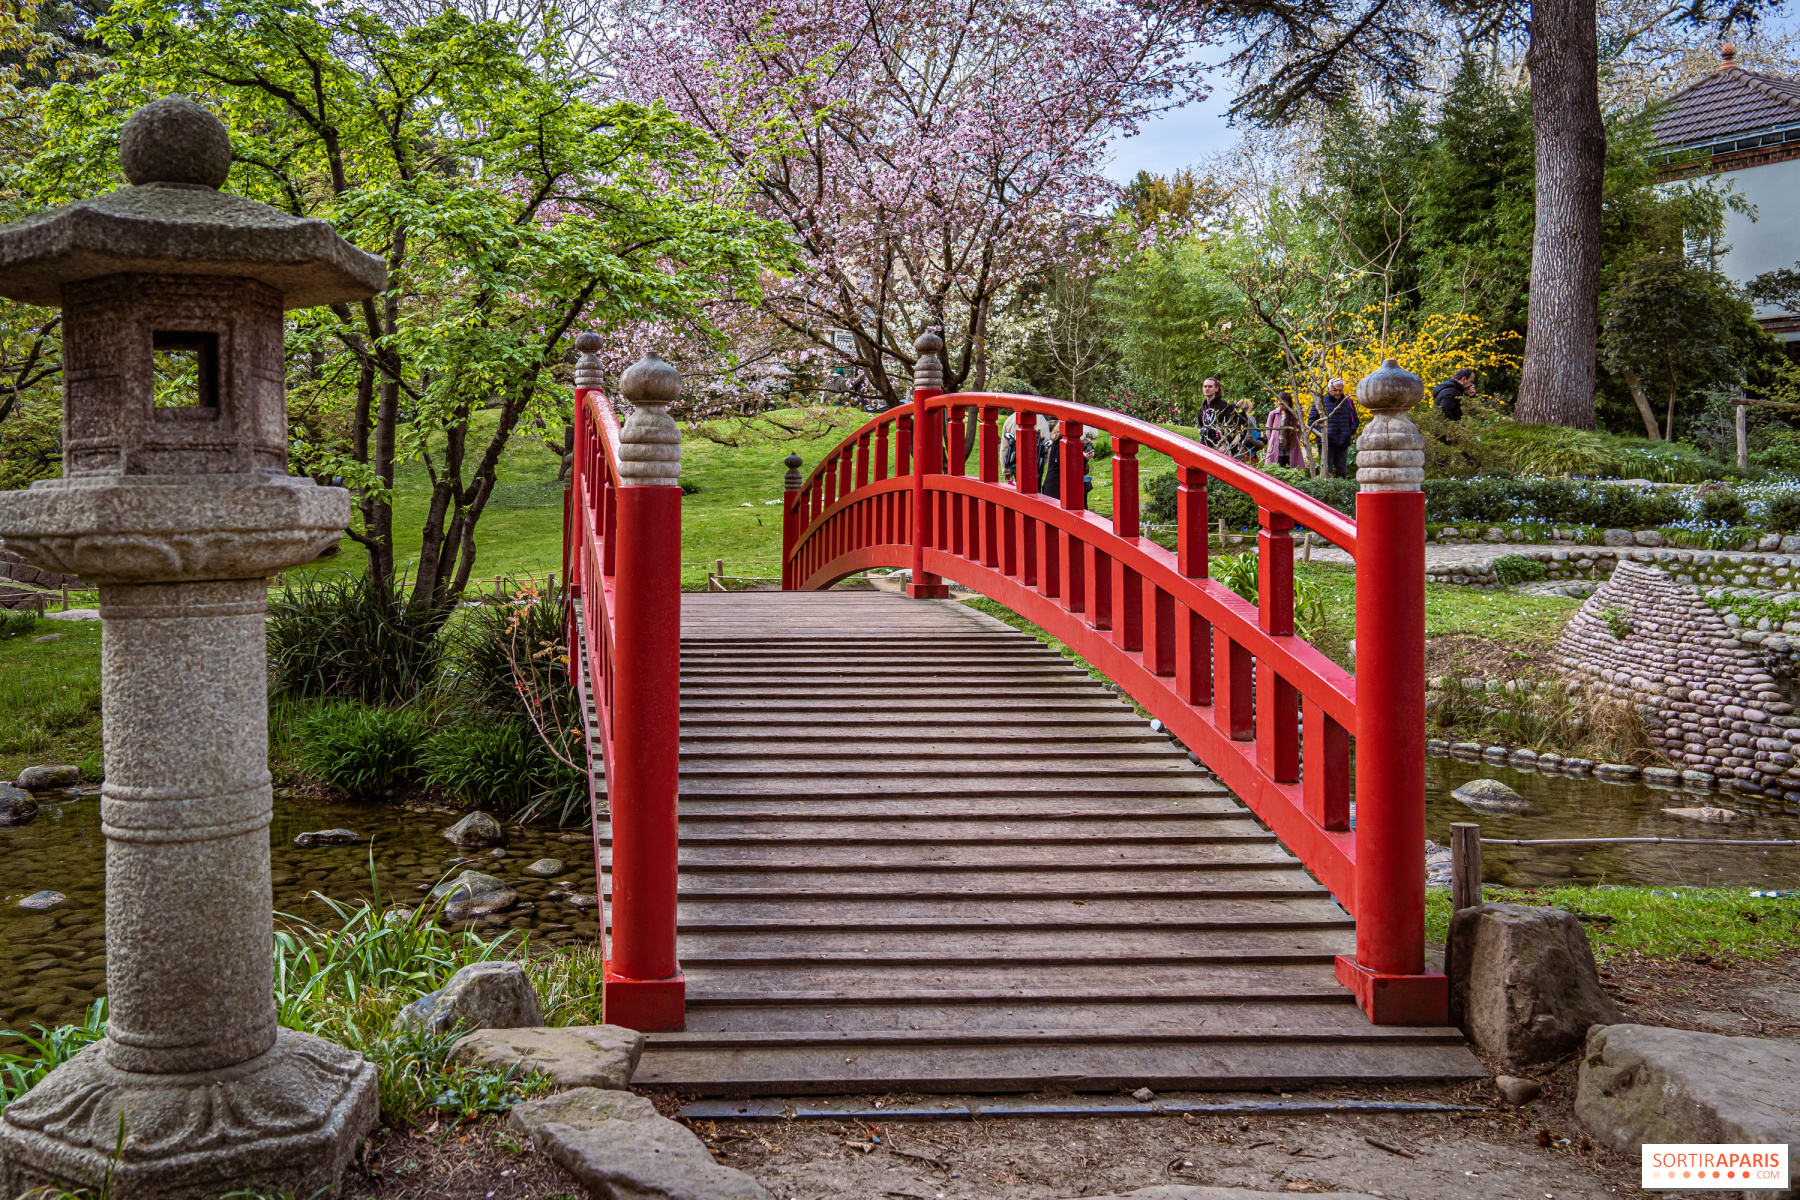 Японский сад парка Кадриорг